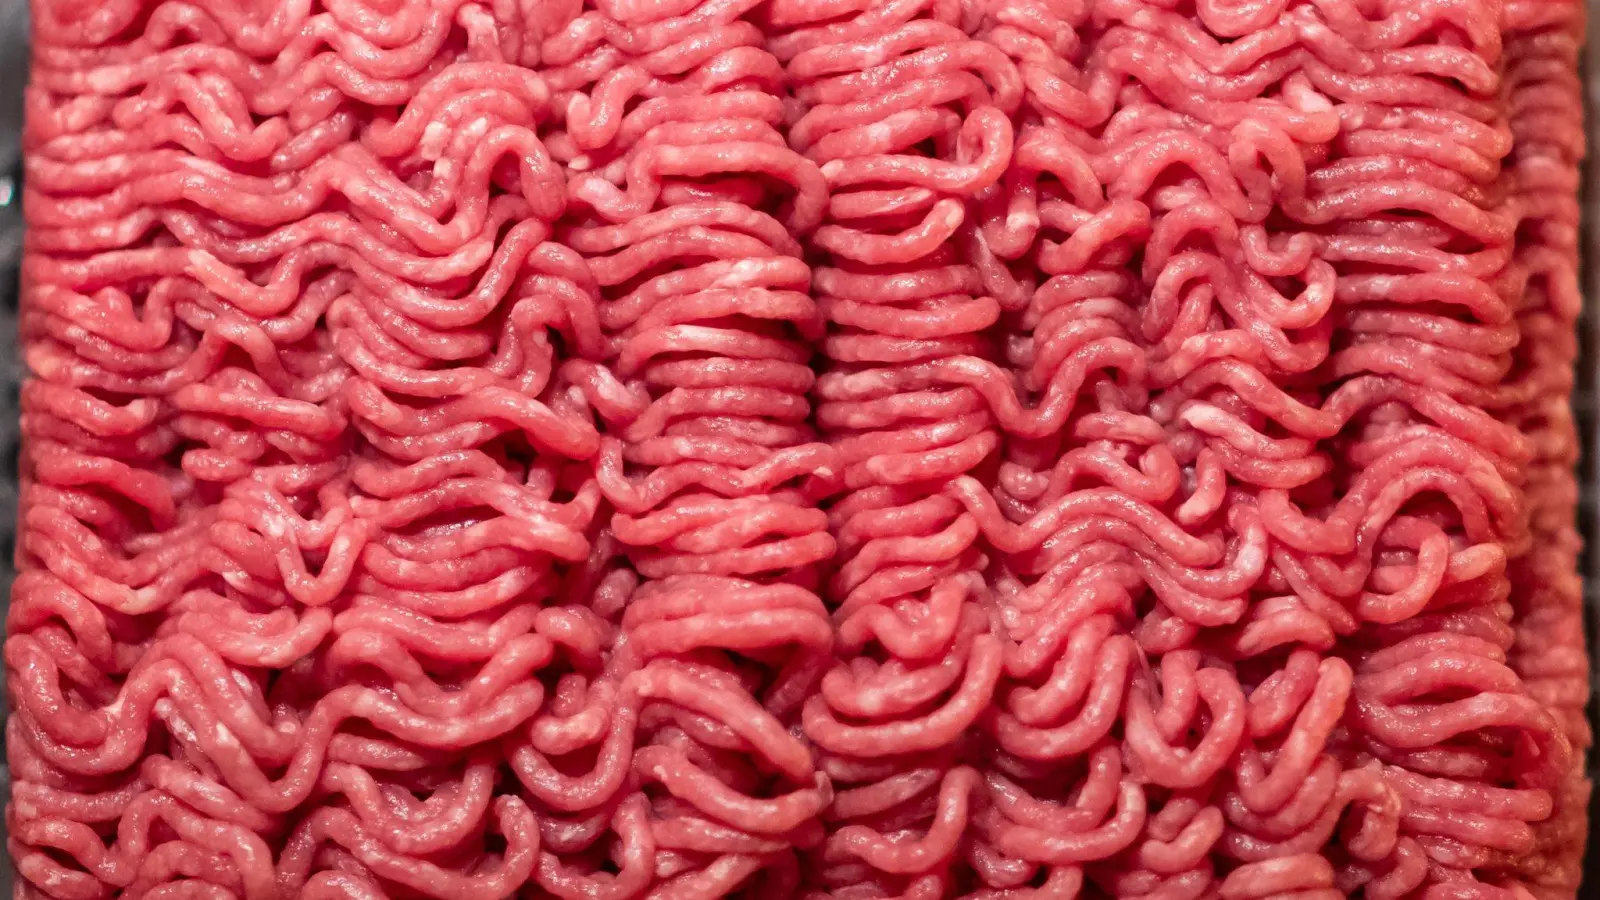 BHackfleisch vom Rind aus dem Supermarkt liegt in einer Schale. Kontrolleure fanden hier oft krankmachende Keime. (Foto: Daniel Karmann/dpa)